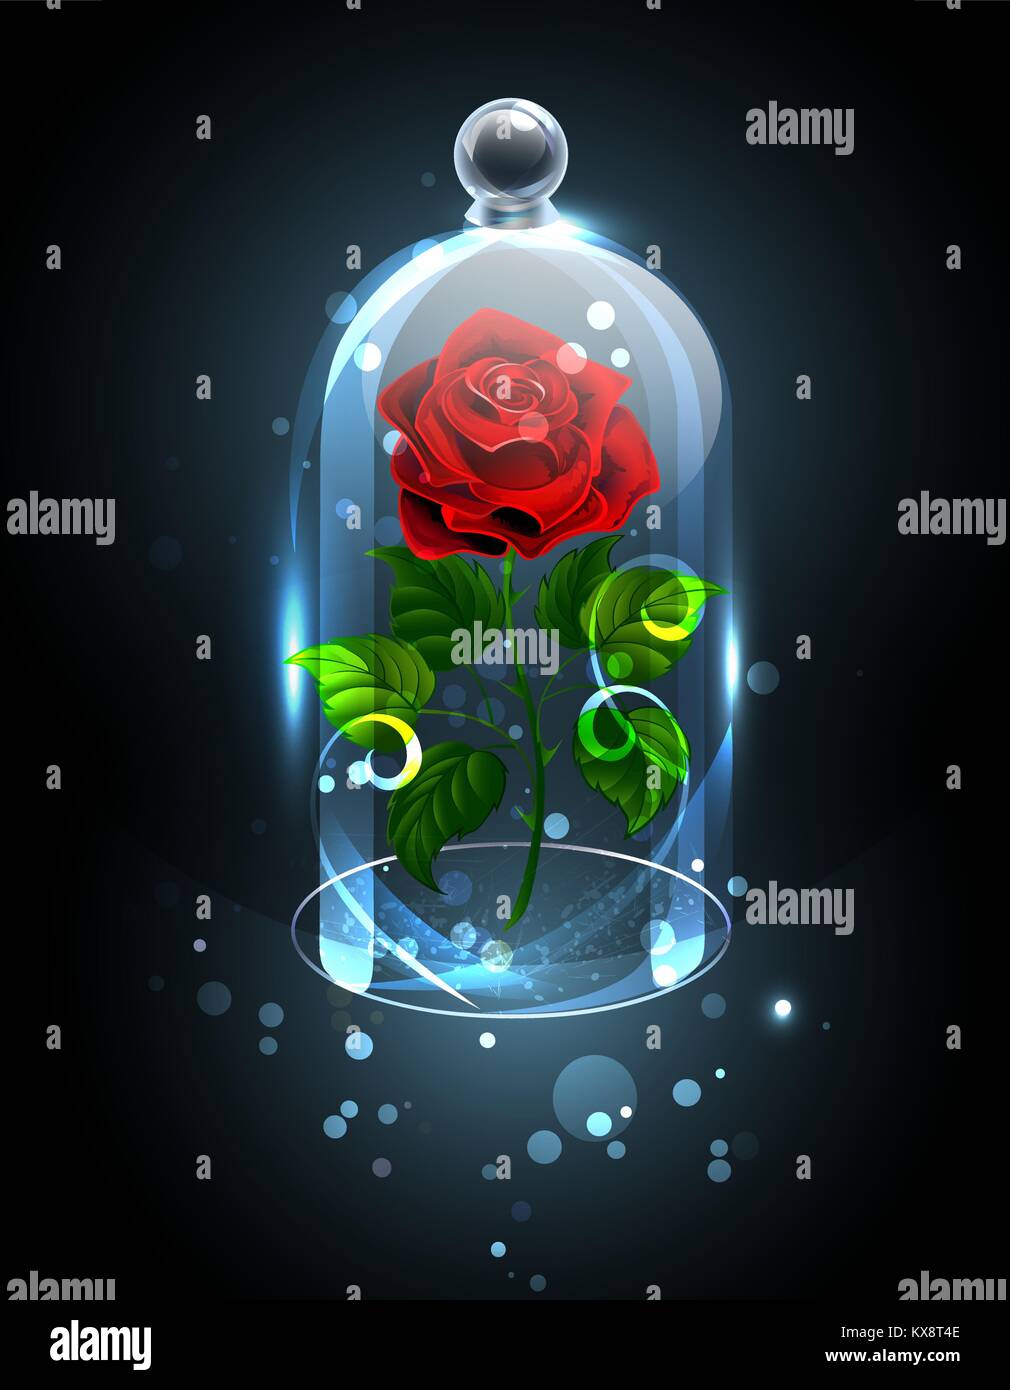 Rot, ewige Rose unter einem funkelnden Kristall Kuppel auf einem dunklen Hintergrund. Rote Rose. Vector Illustration. Stock Vektor